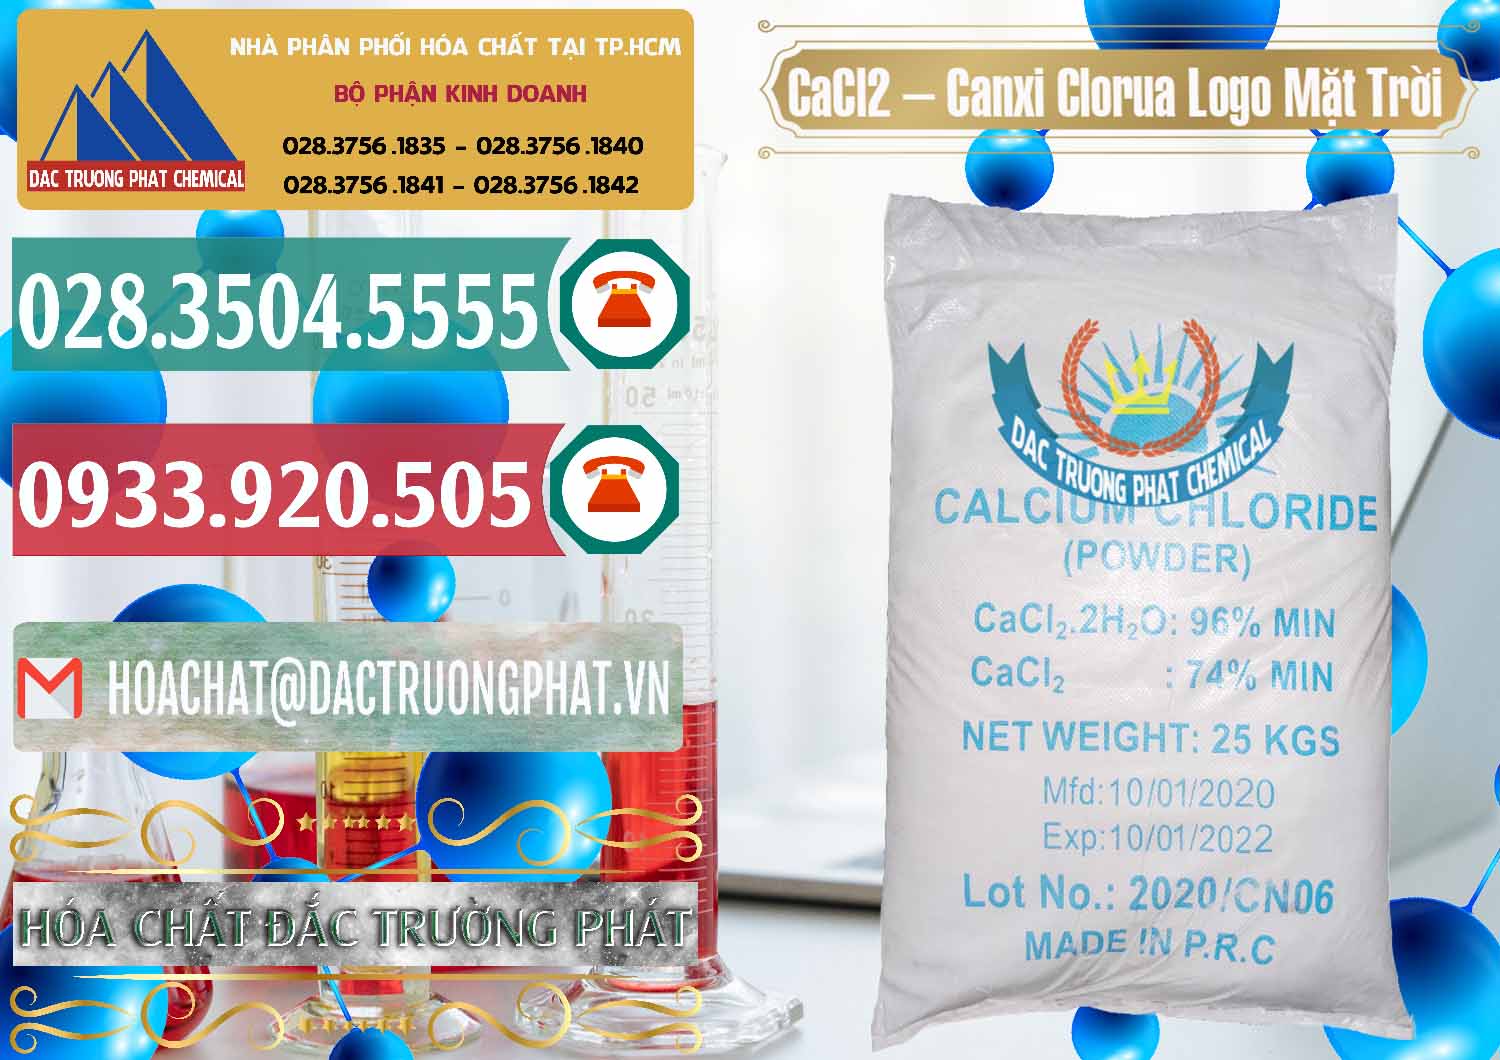 Nơi chuyên bán - phân phối CaCl2 – Canxi Clorua 96% Logo Mặt Trời Trung Quốc China - 0041 - Phân phối _ cung cấp hóa chất tại TP.HCM - muabanhoachat.vn